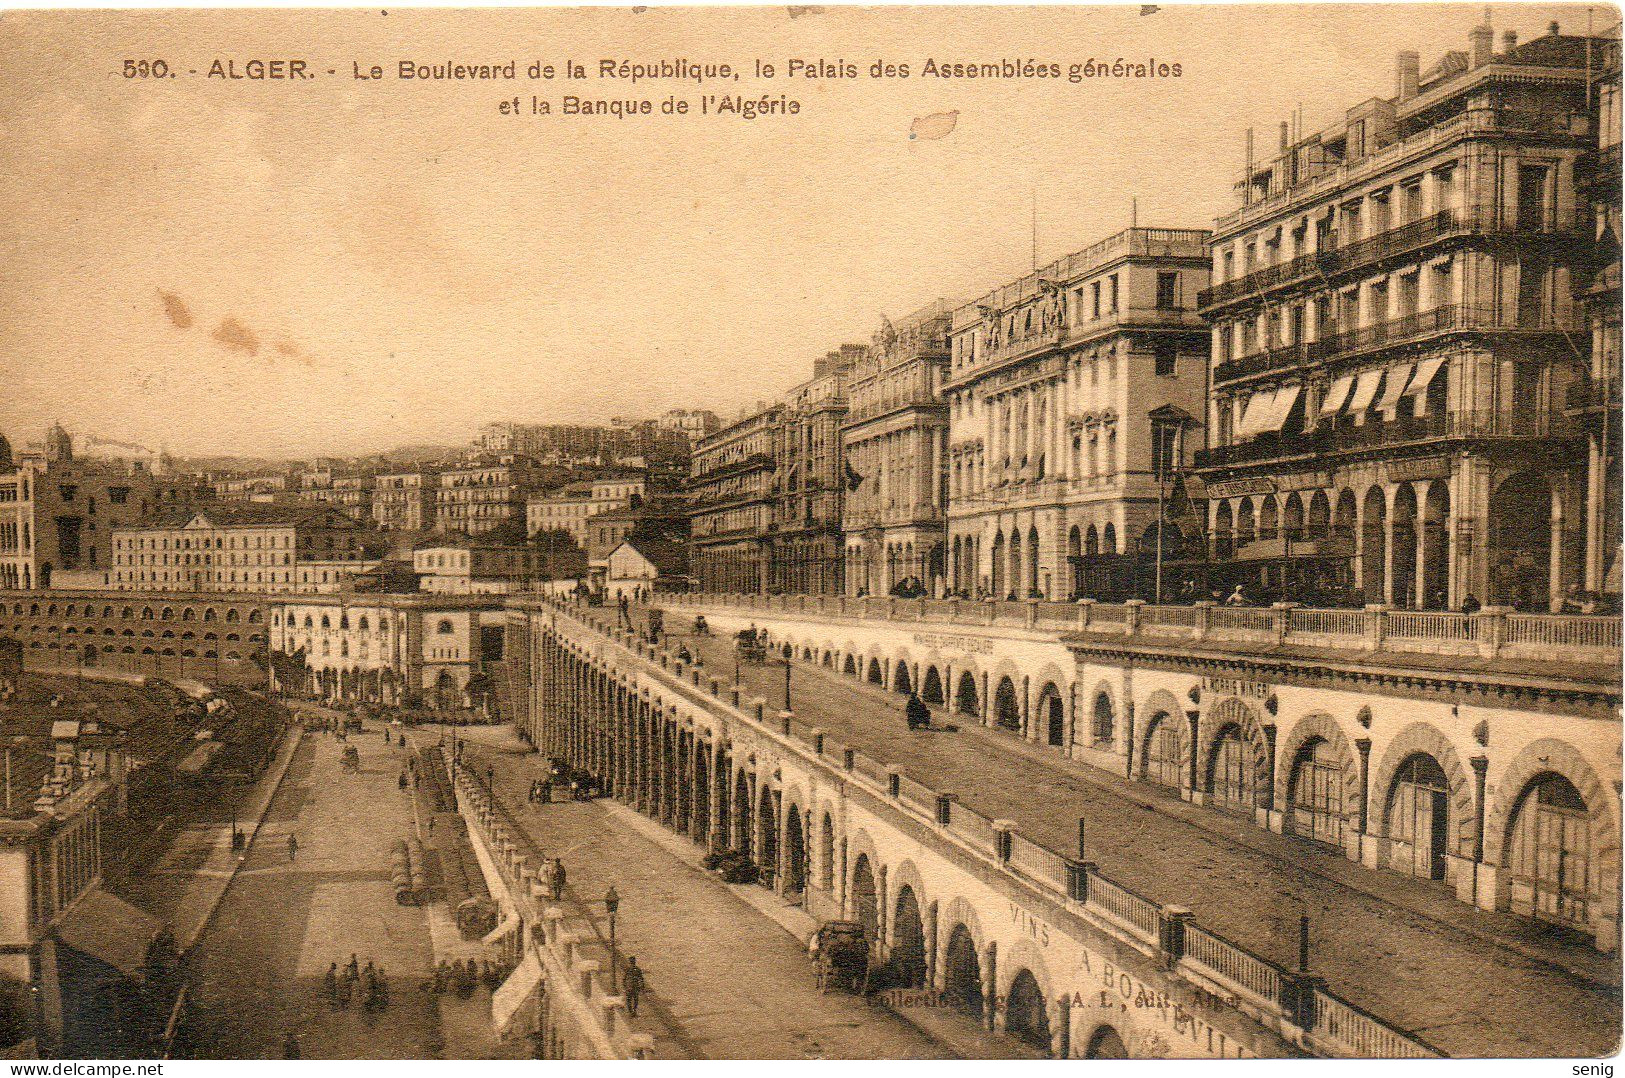 ALGERIE ALGER - 590 - Boulevard De La République Palais Des Assemblées Banque D'Algérie - Collection Régence (Leroux) - - Algiers